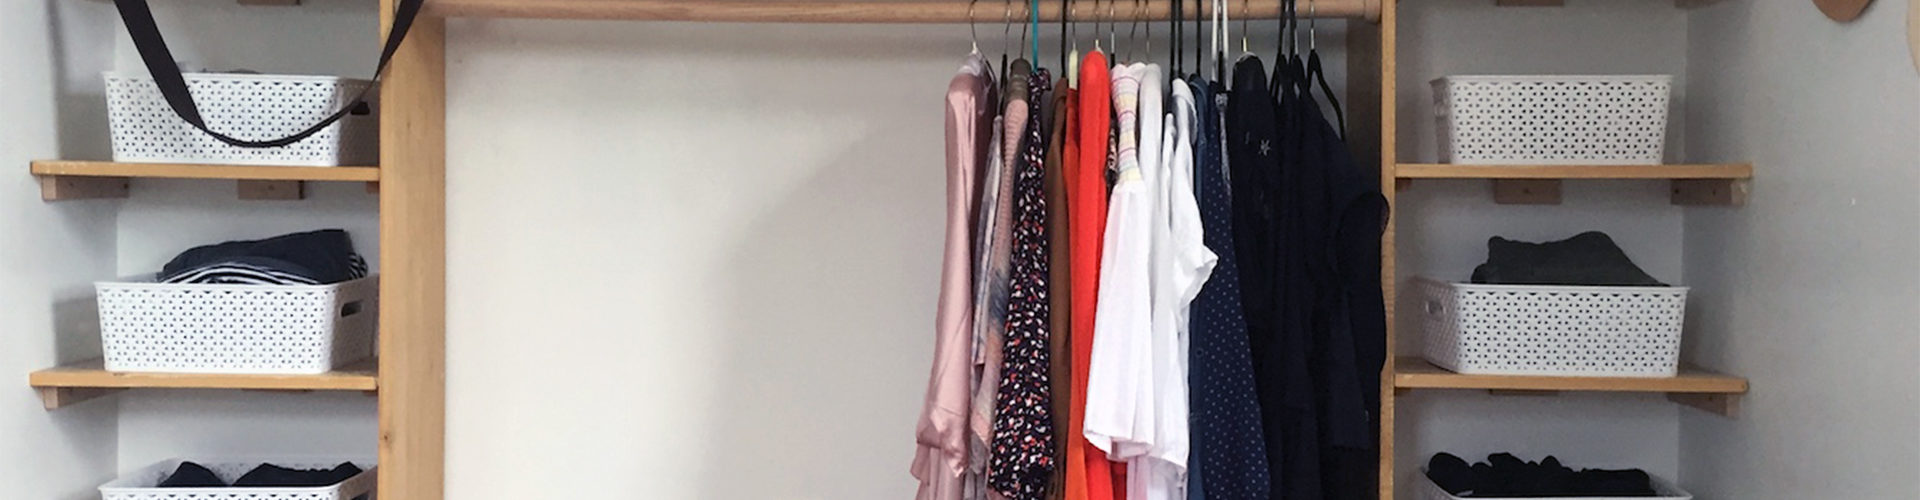 How To Make A Dream Diy Dressing Room Life Storage Blog